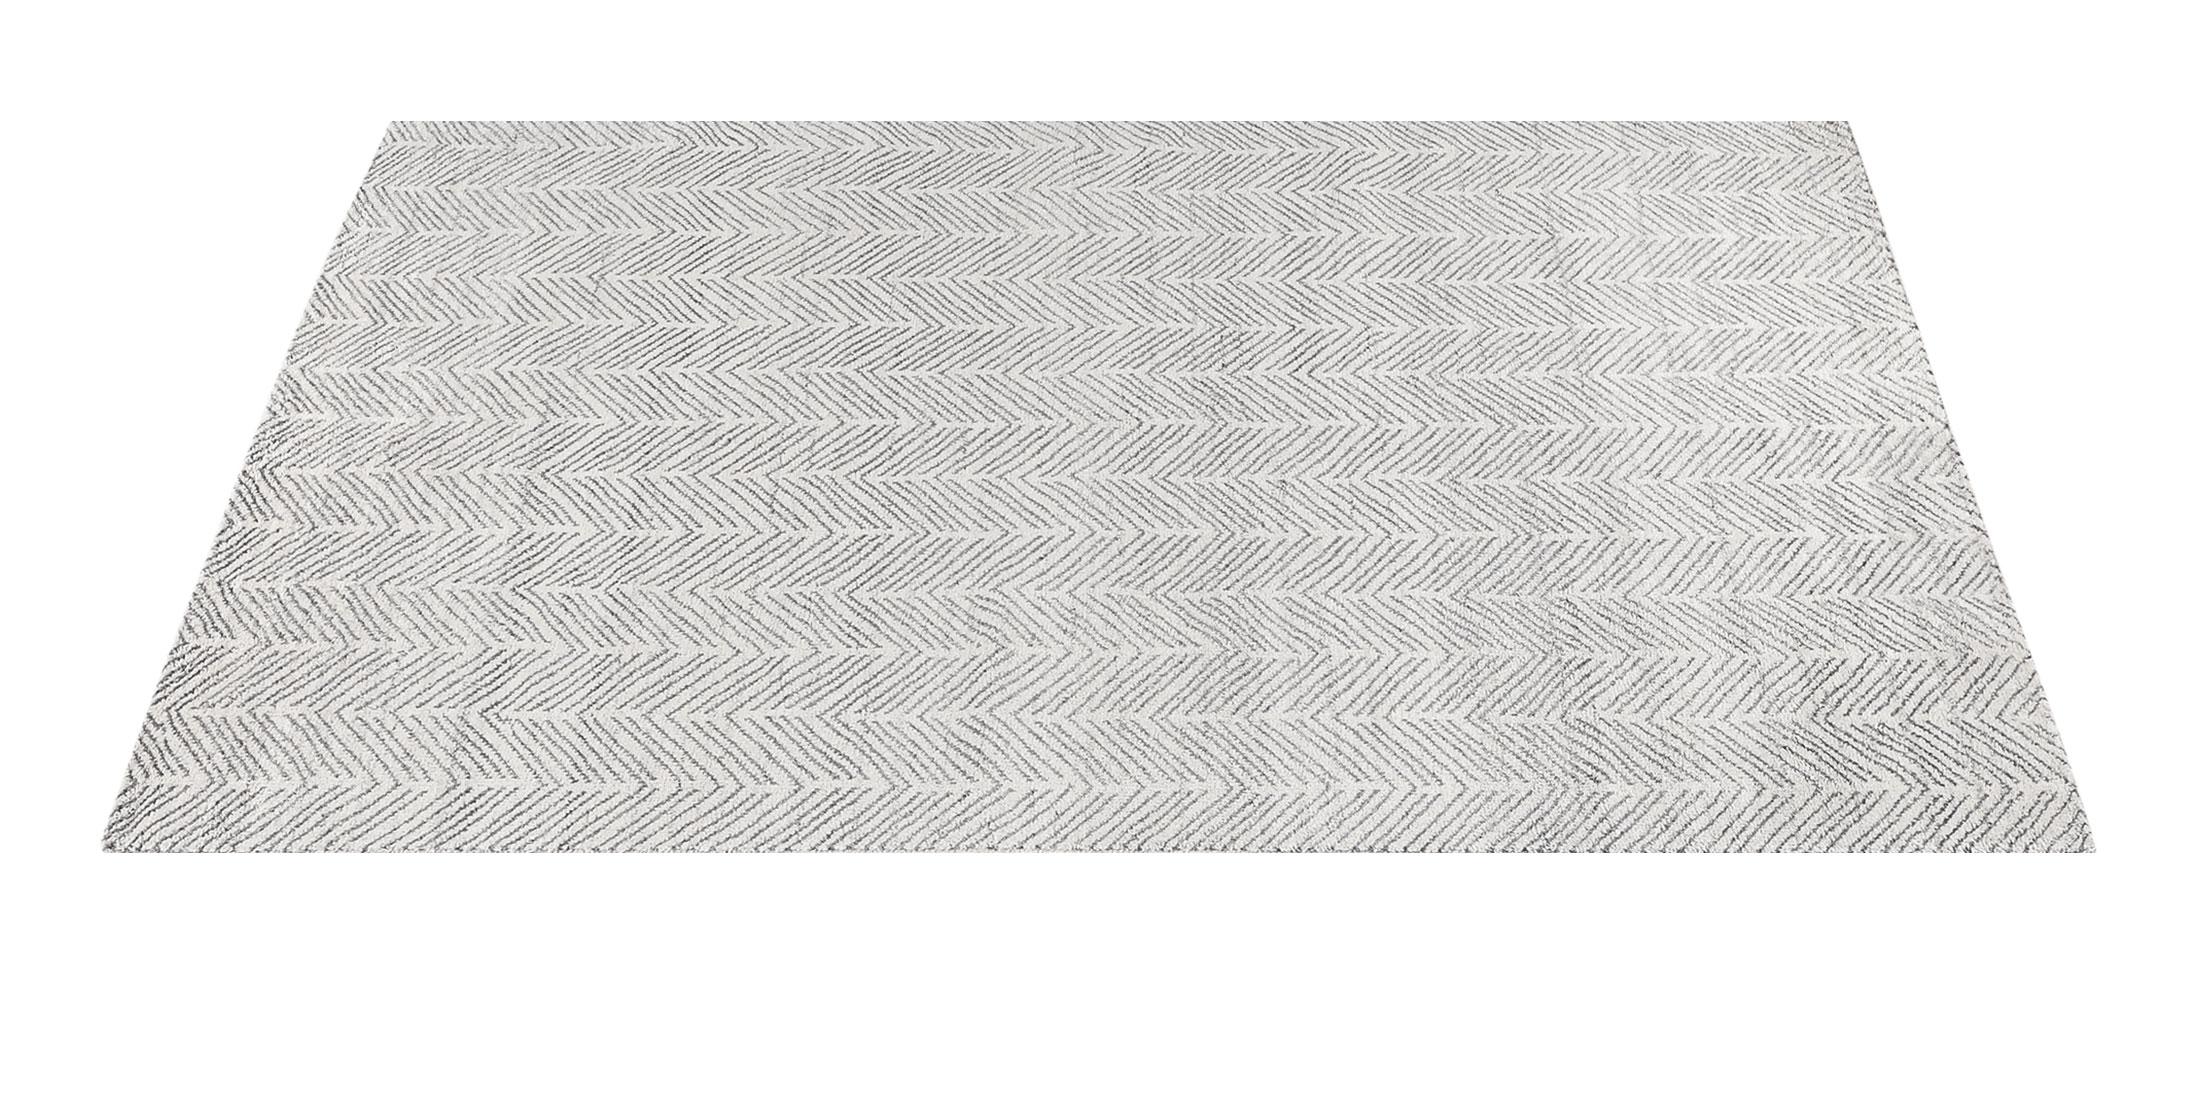 For Sale: White (White/Silver) Ben Soleimani Alia Rug– Hand-woven Chevron Wool + Viscose Black/Gray 8'x10' 2